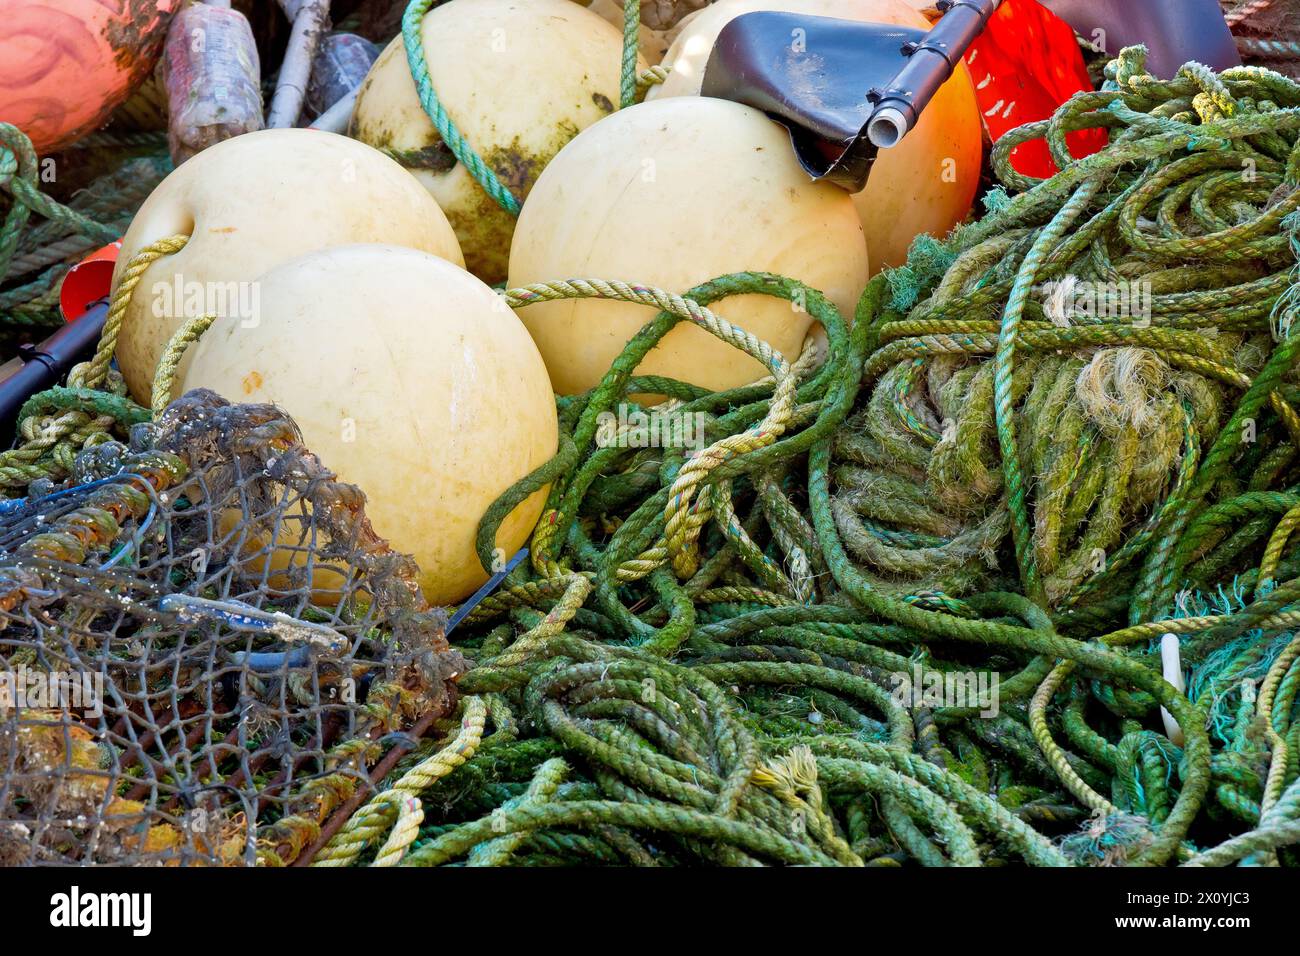 Primo piano di un mucchio di attrezzi da pesca costiera ammassati sulla banchina del porto di Arbroath, canne, vasi di granchio o aragosta, corde, galleggianti e bandiere segnaletiche. Foto Stock